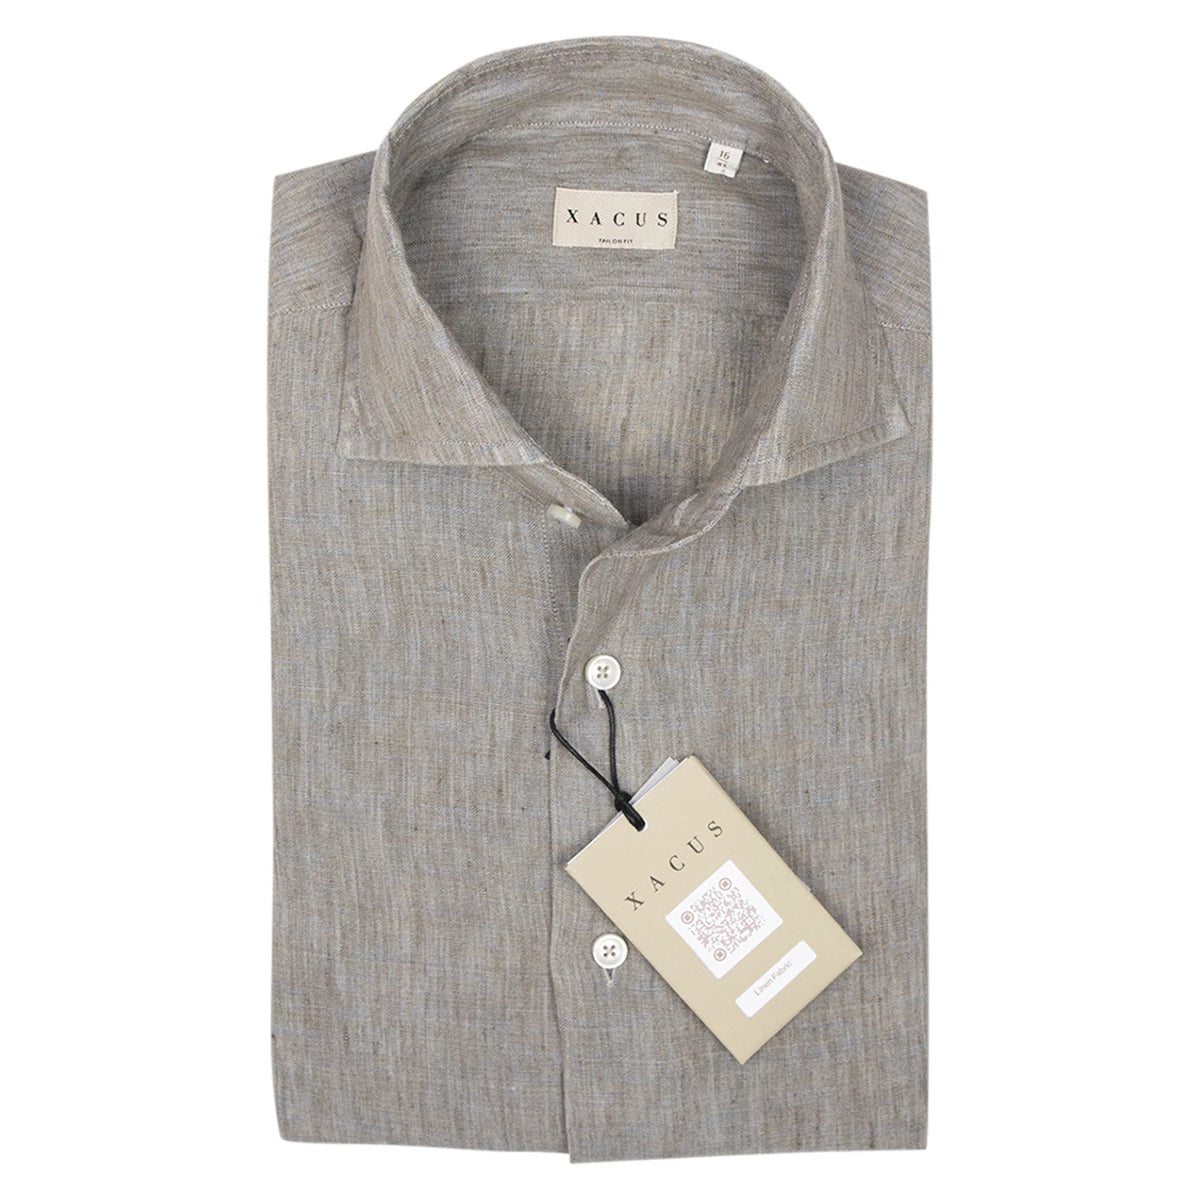 Xacus Linnen Overhemd bruin met grijs | Washed shirt